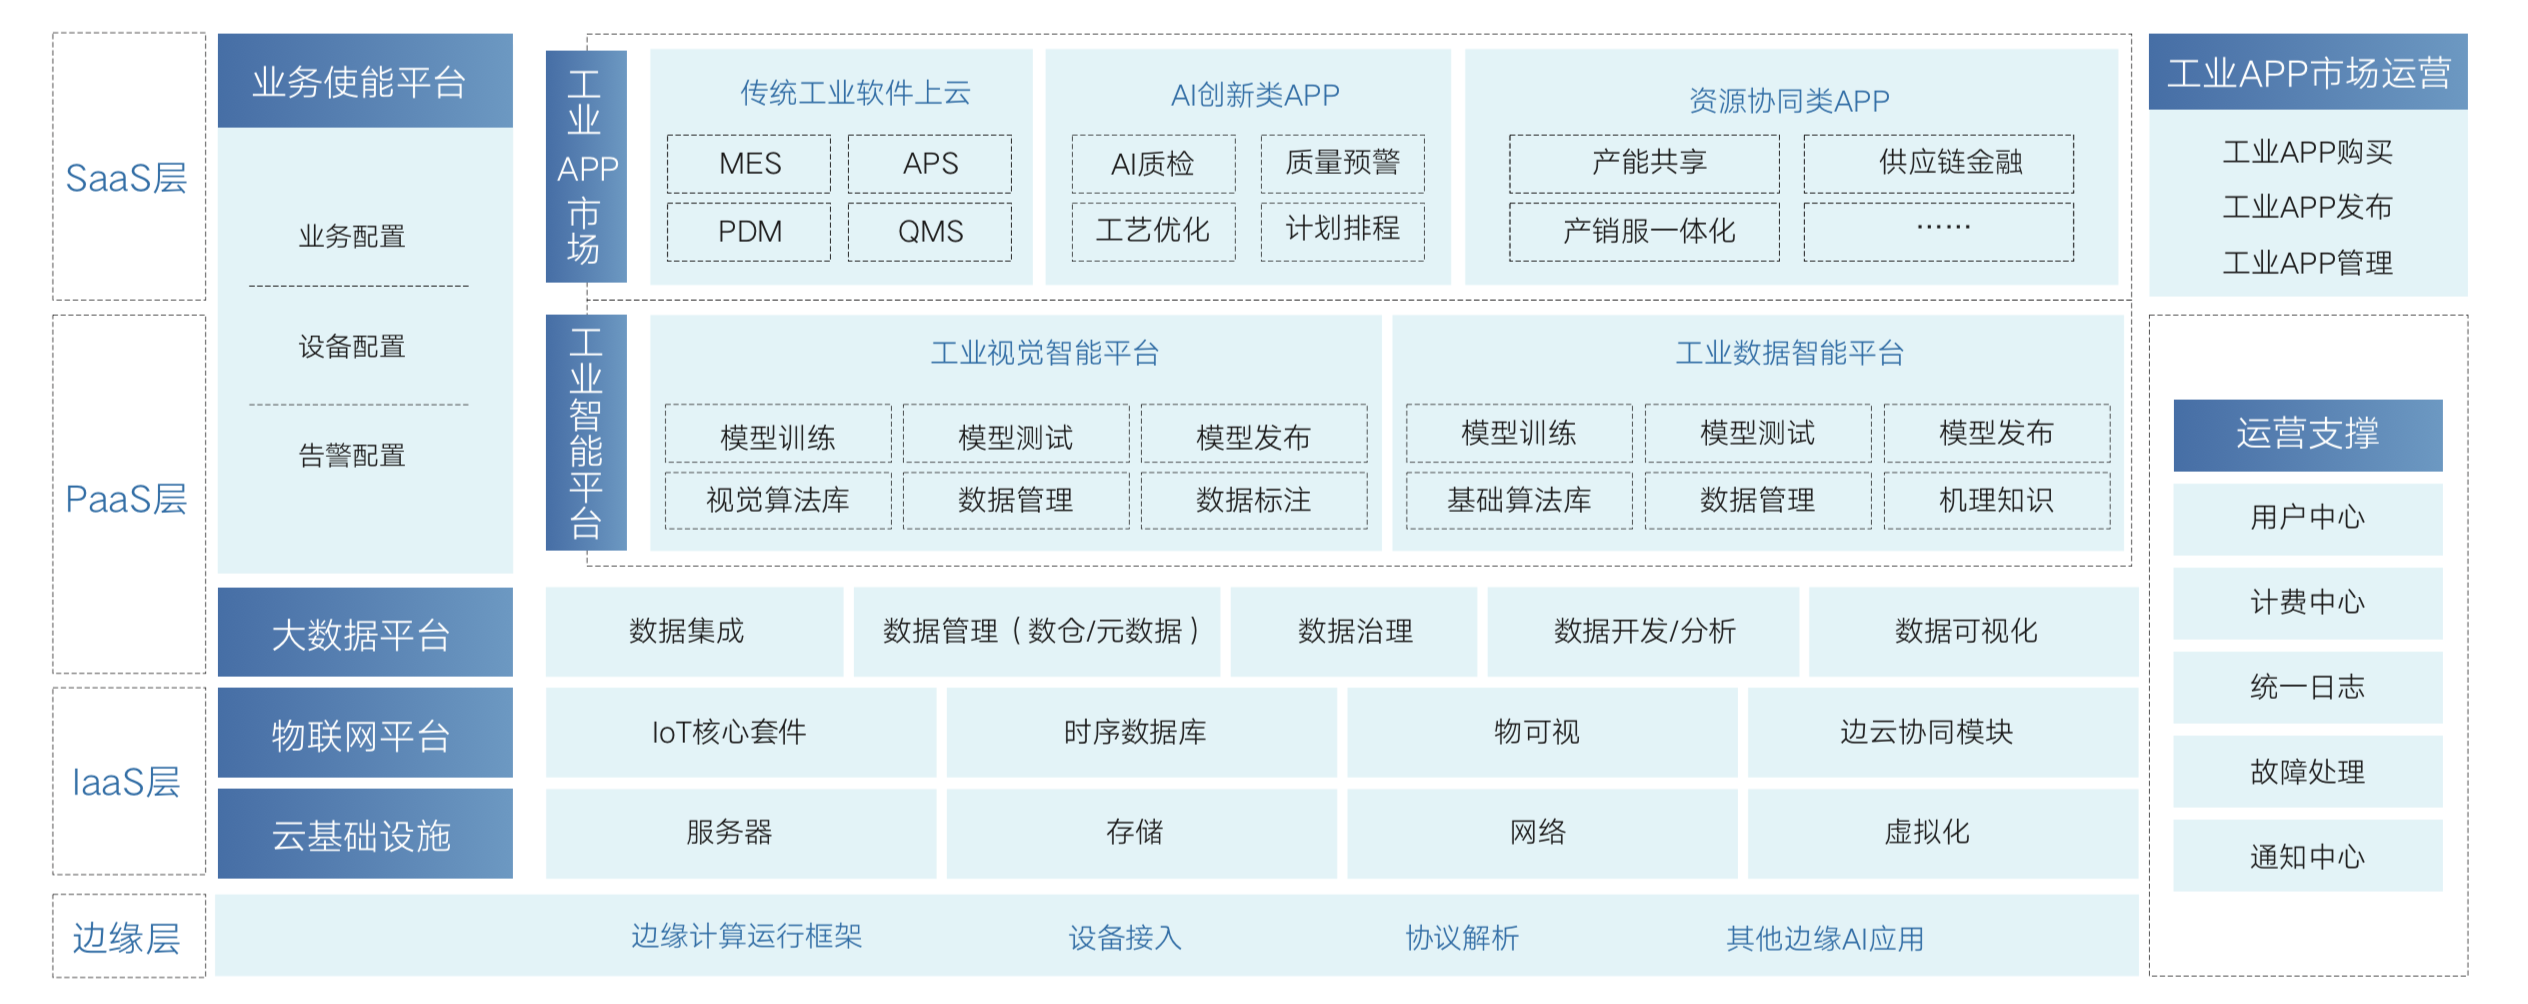 Arquitectura de Internet industrial en la nube de Baidu